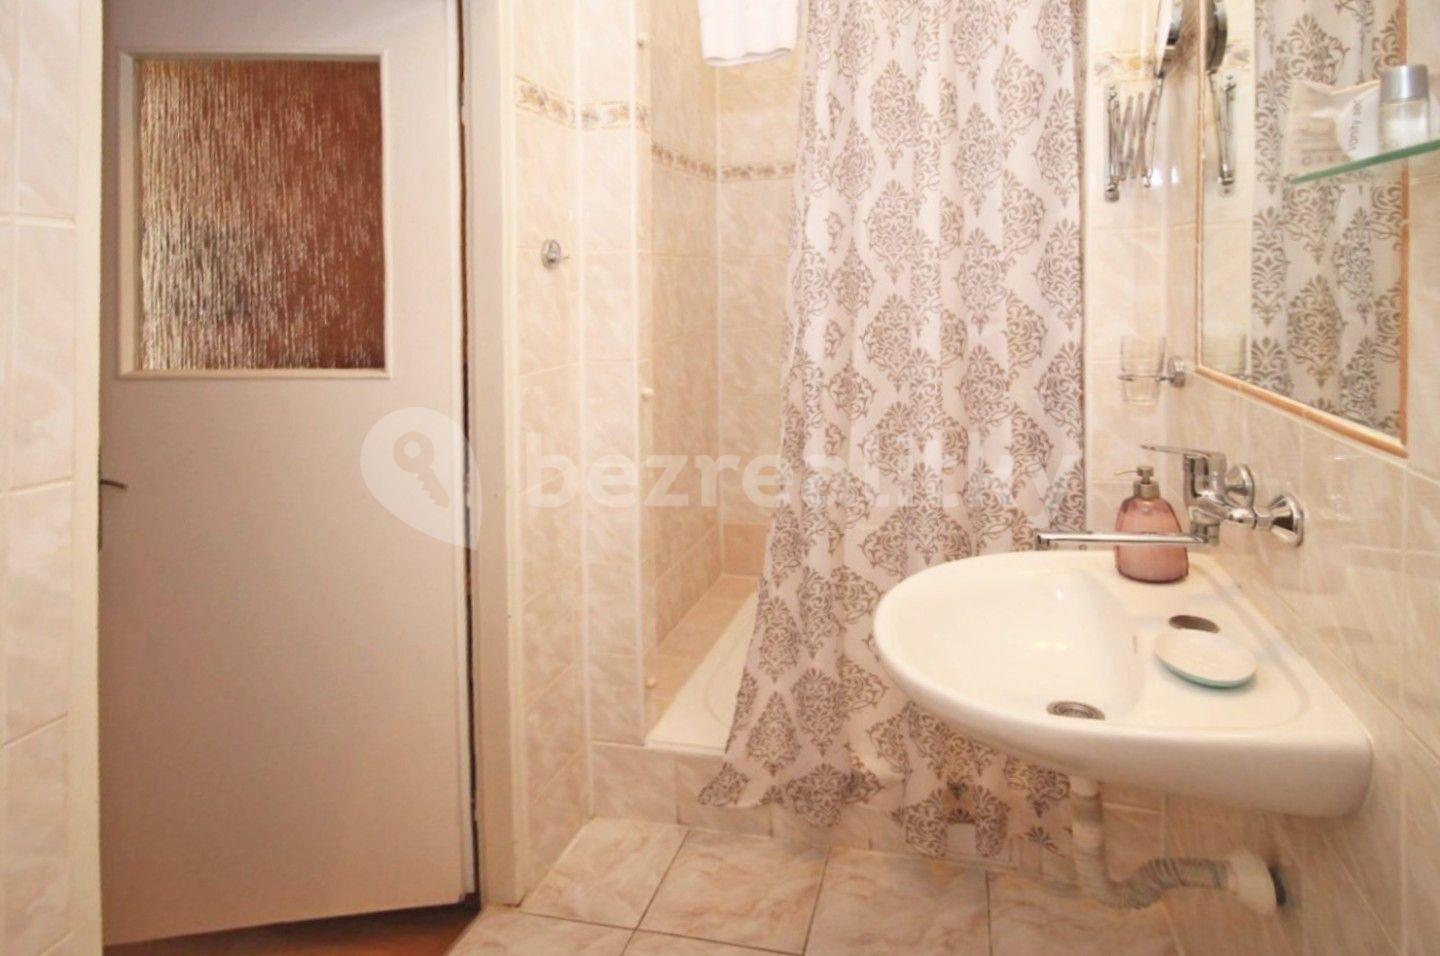 1 bedroom with open-plan kitchen flat for sale, 33 m², Vřídelní, Karlovy Vary, Karlovarský Region